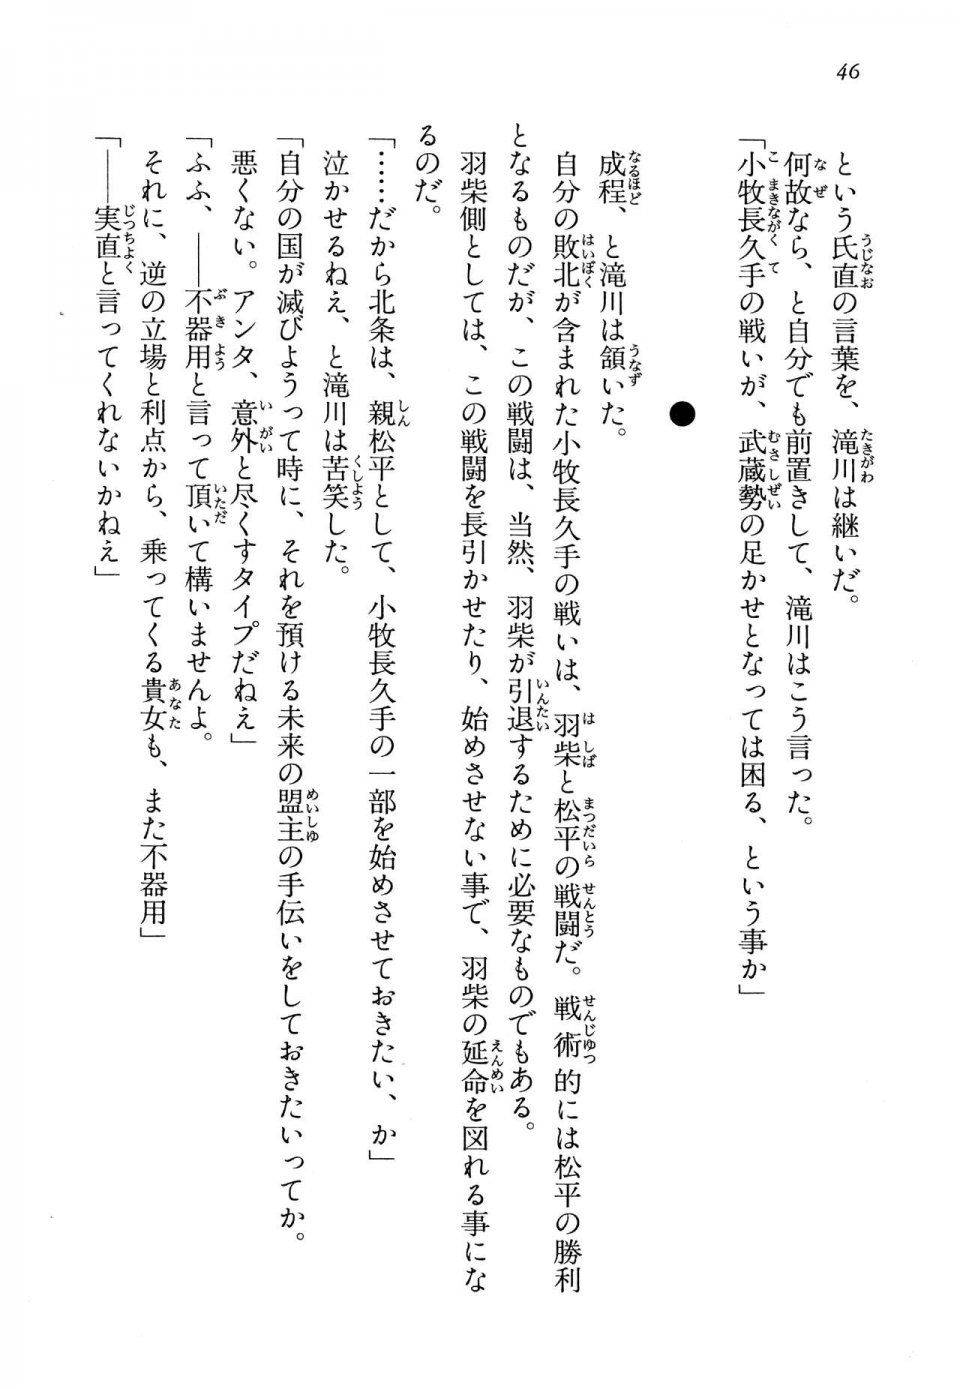 Kyoukai Senjou no Horizon LN Vol 13(6A) - Photo #46